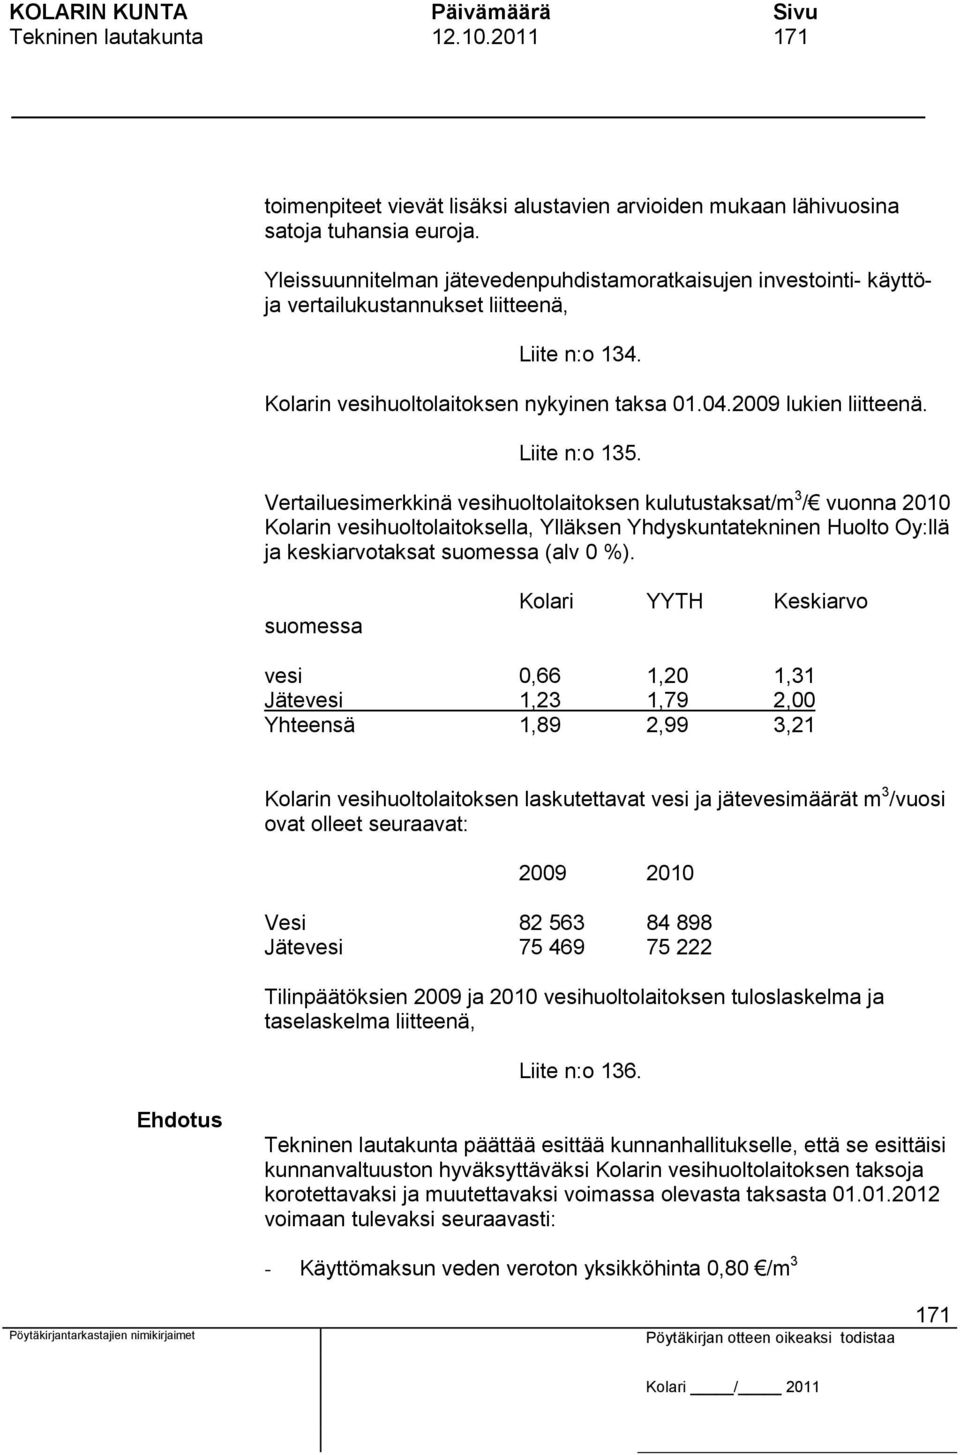 Liite n:o 135. Vertailuesimerkkinä vesihuoltolaitoksen kulutustaksat/m 3 / vuonna 2010 Kolarin vesihuoltolaitoksella, Ylläksen Yhdyskuntatekninen Huolto Oy:llä ja keskiarvotaksat suomessa (alv 0 %).